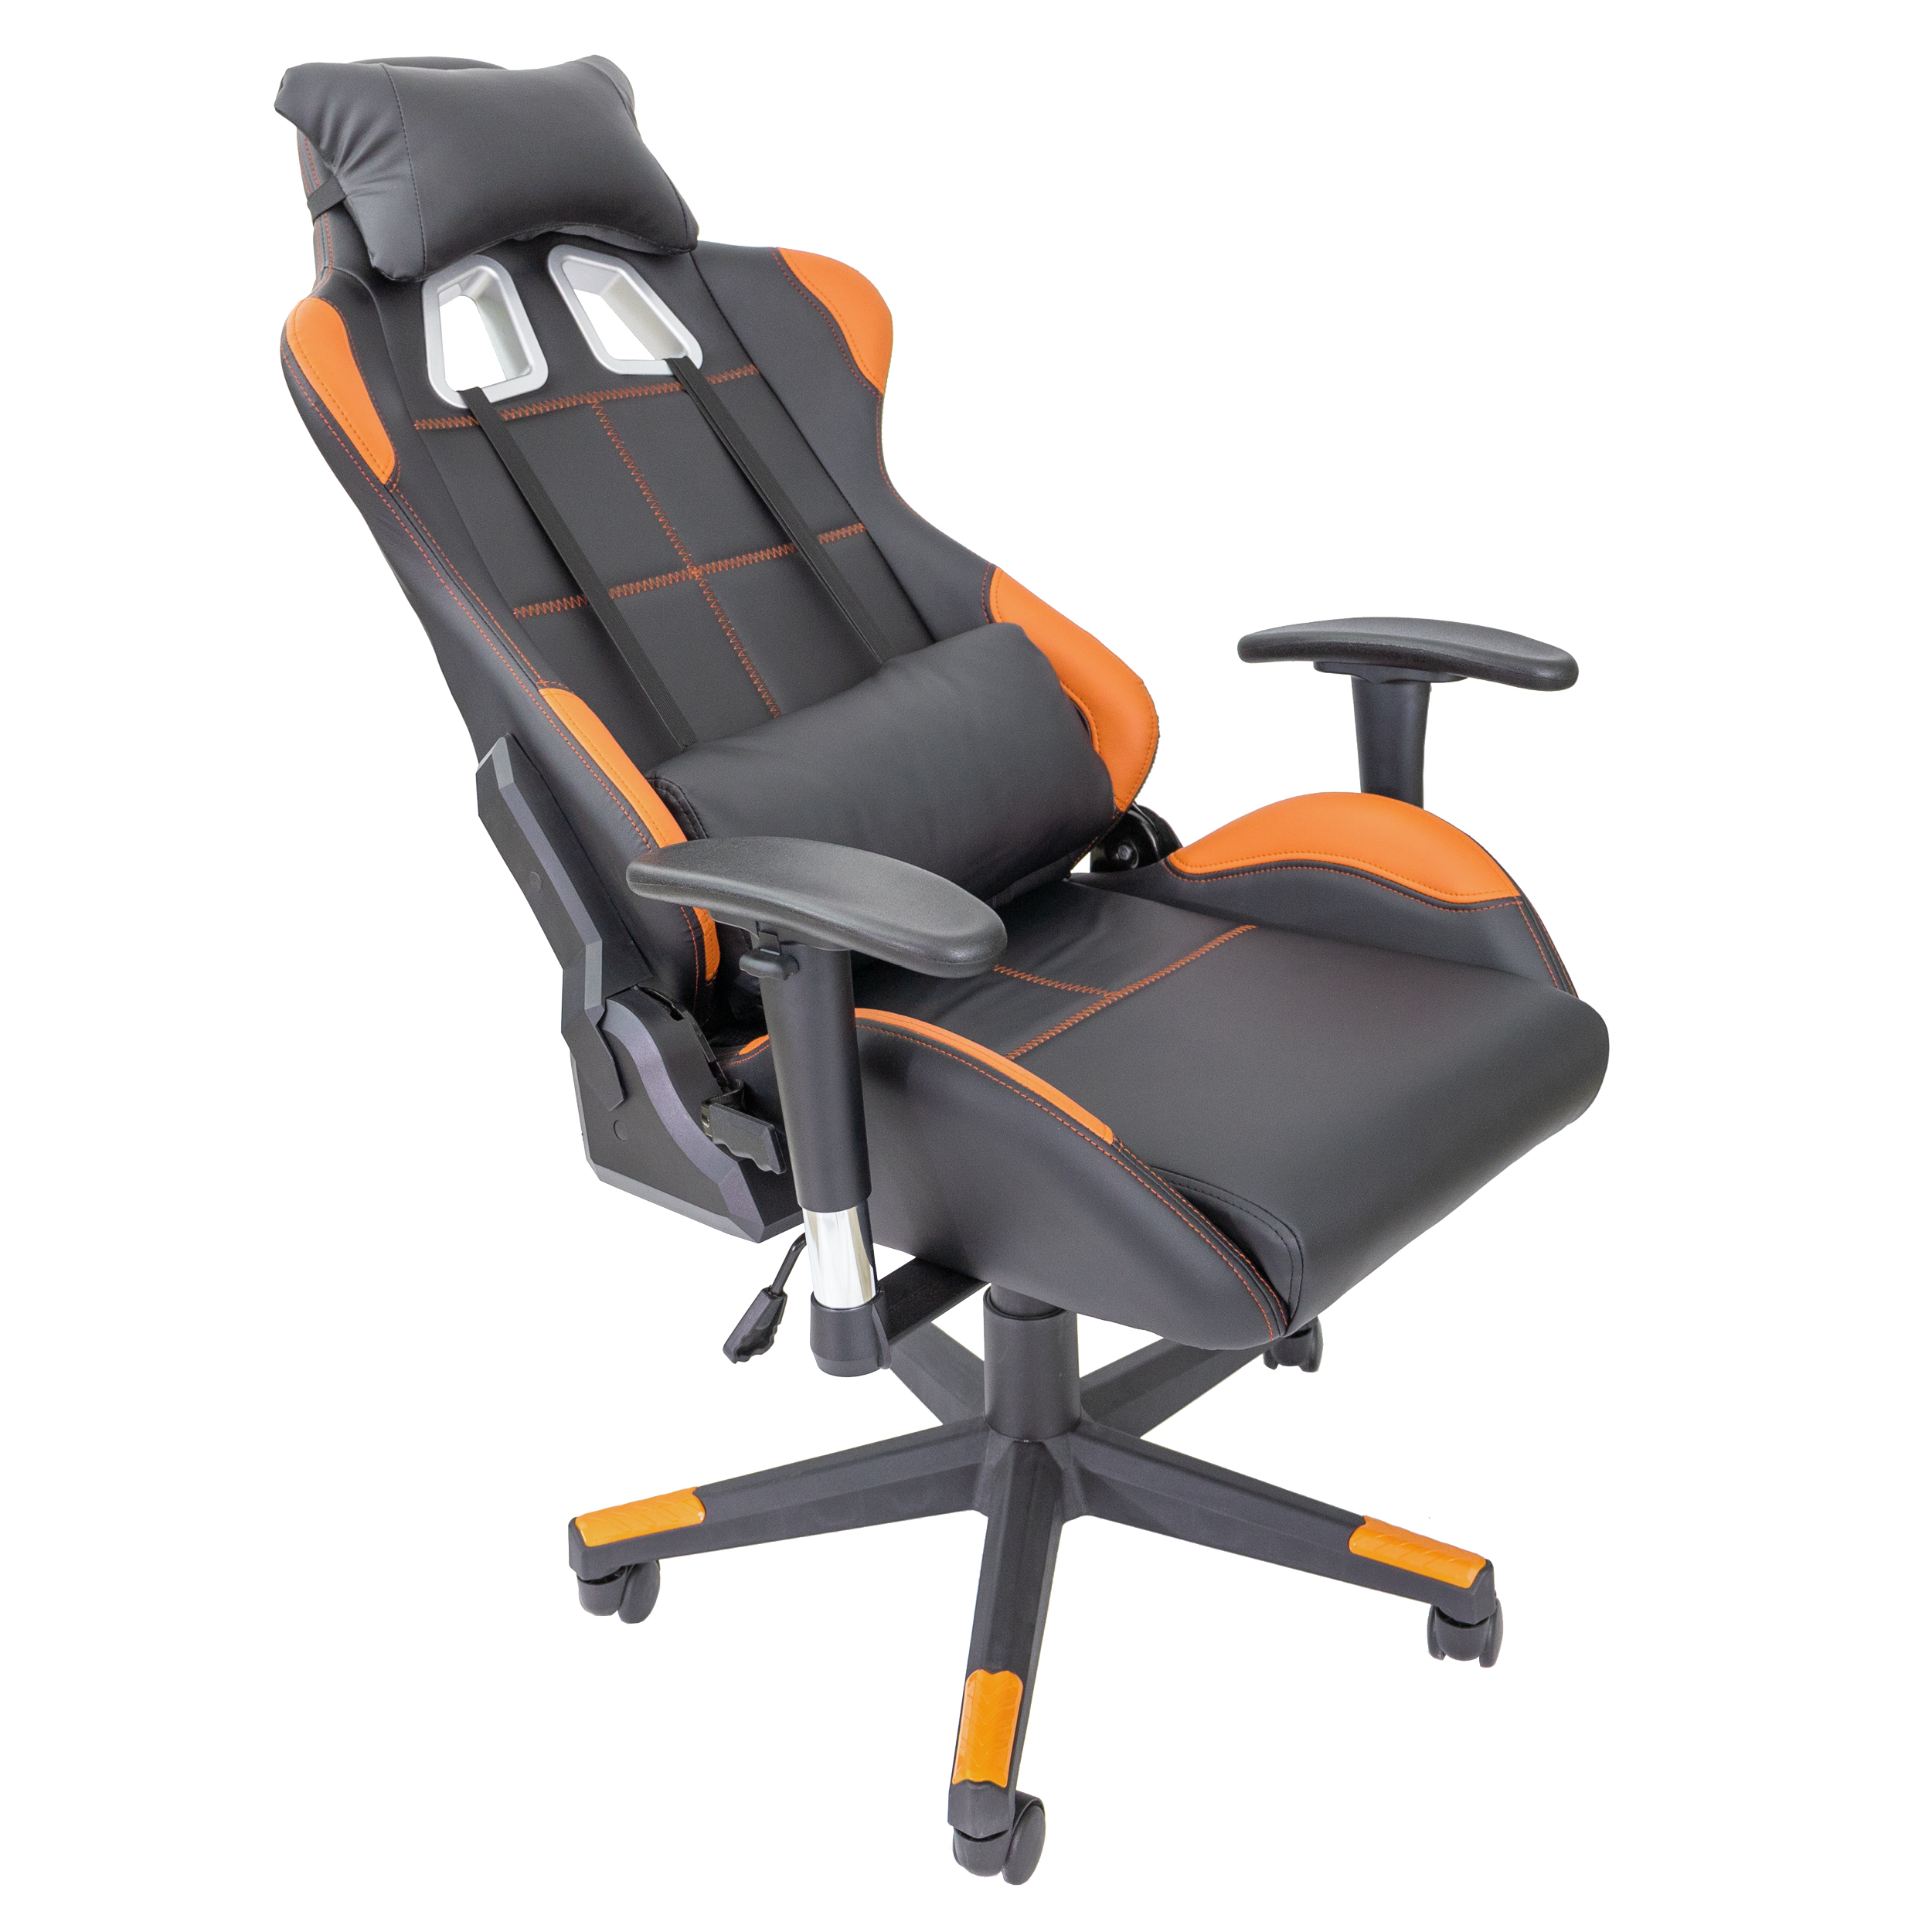 Fire Chair, schwarz/orange Gaming Stuhl TPFLIVING Gaming